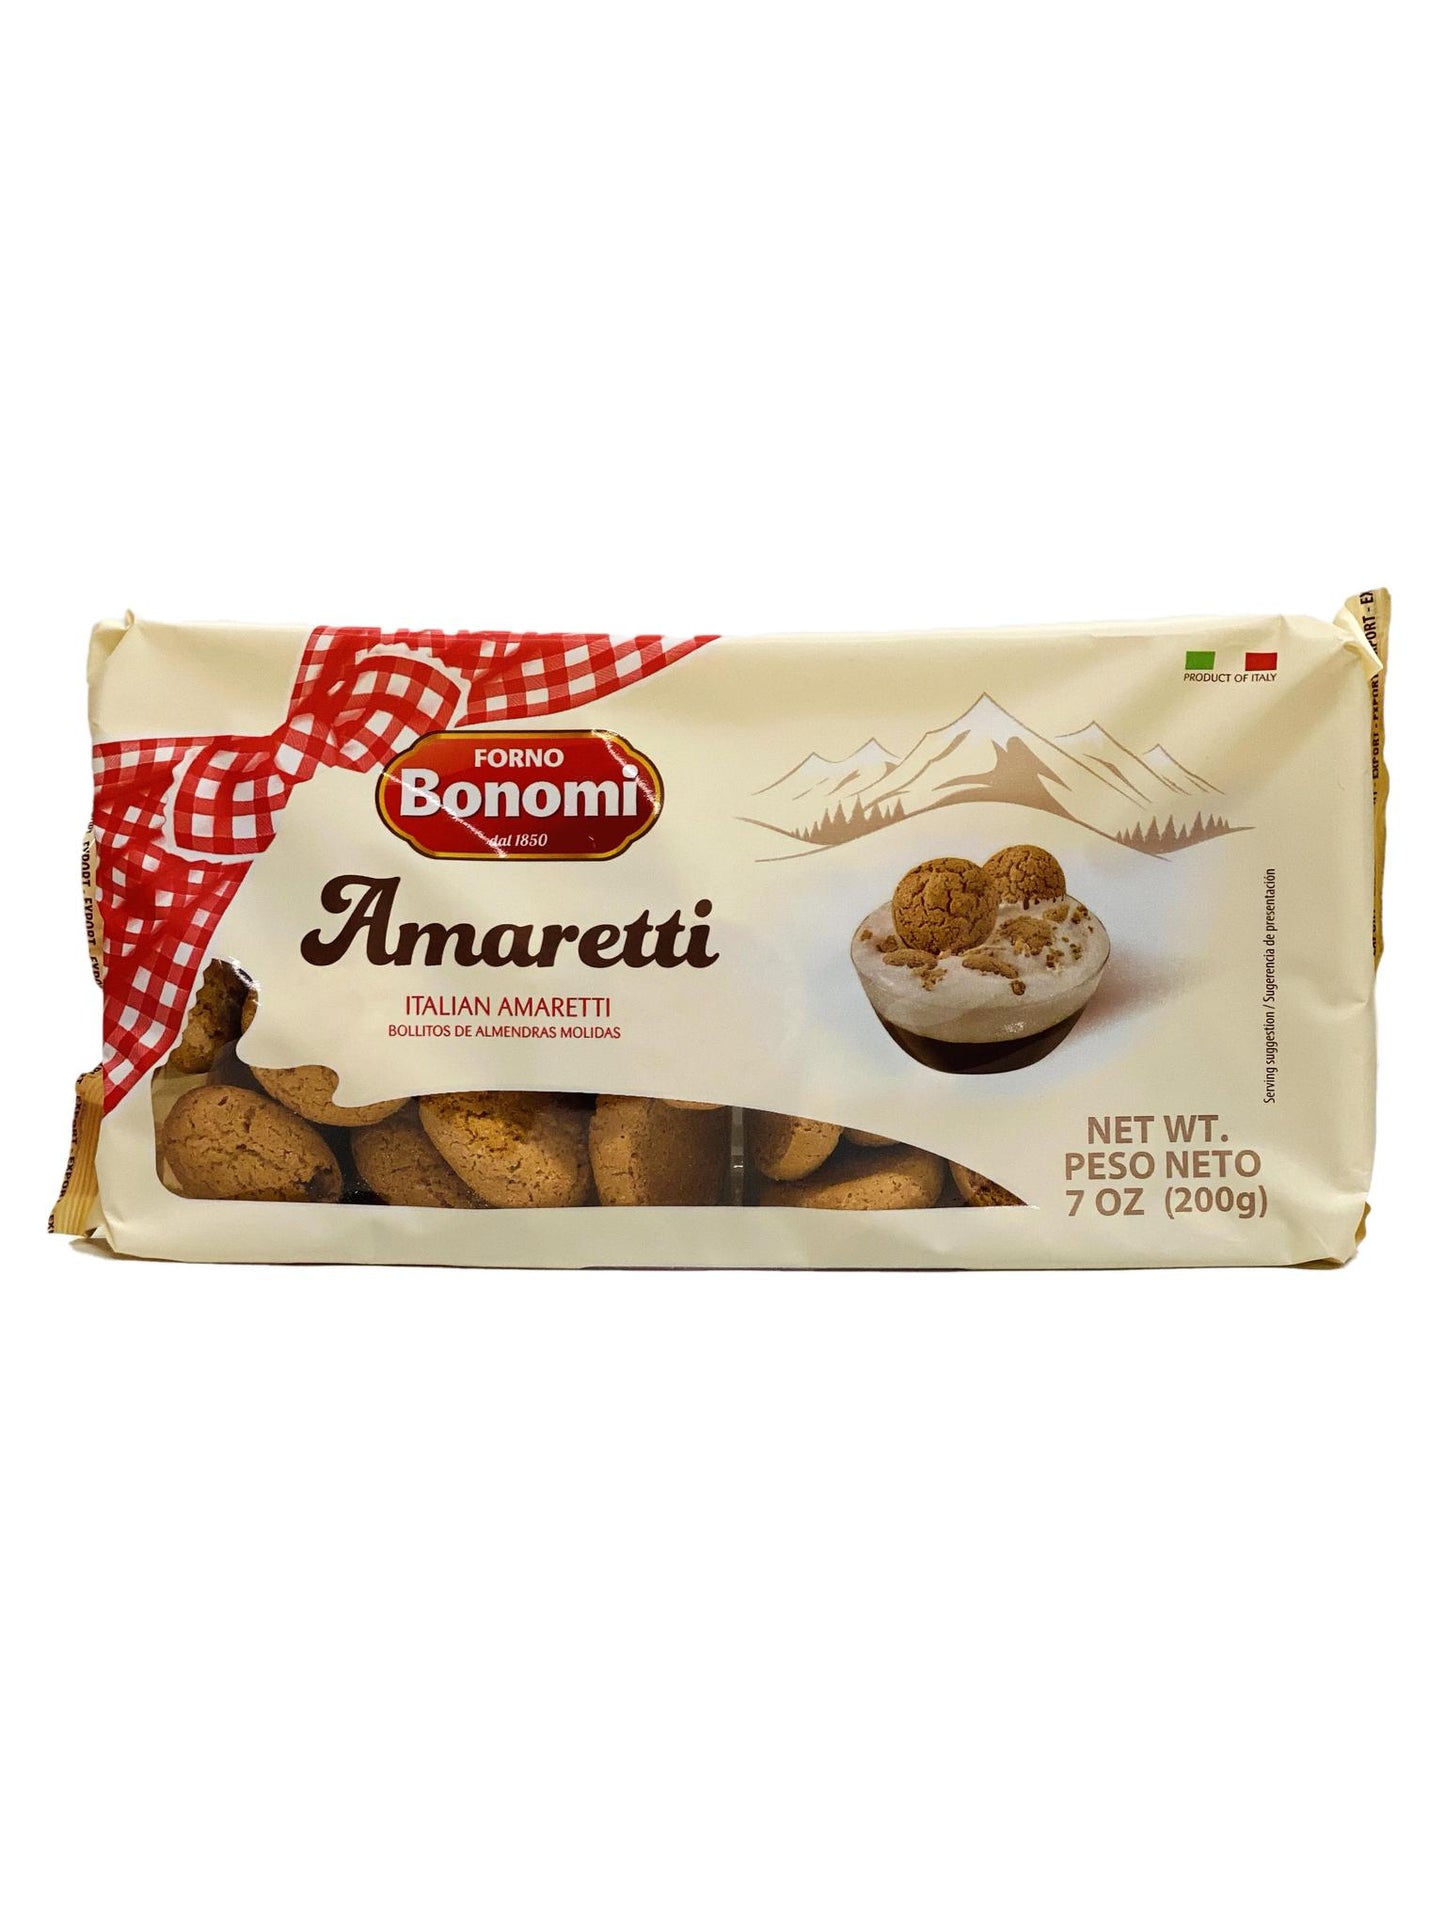 Forno Bonomi Italian Amaretti Cookies, 7 oz